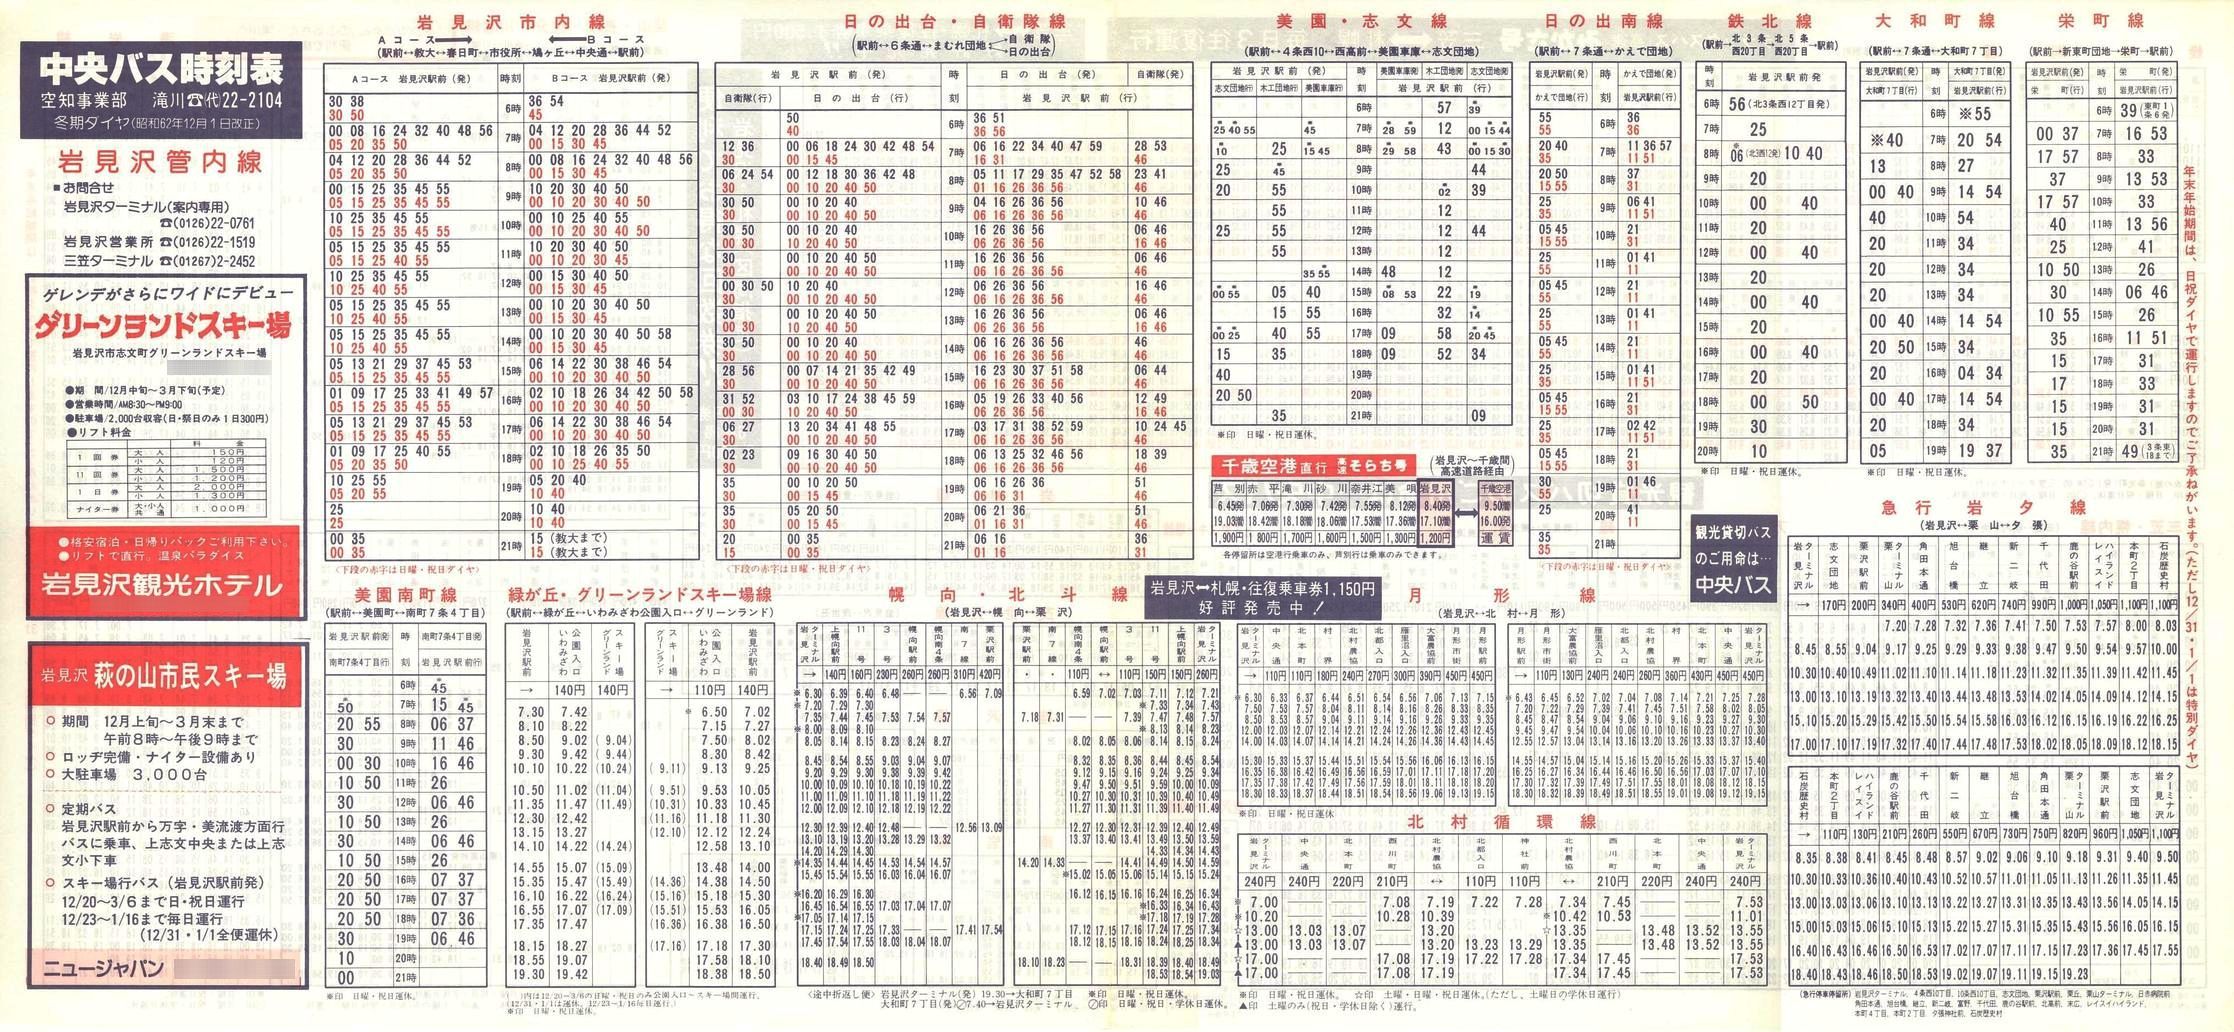 1987-12-01改正_北海道中央バス(空知)_岩見沢管内線時刻表表面